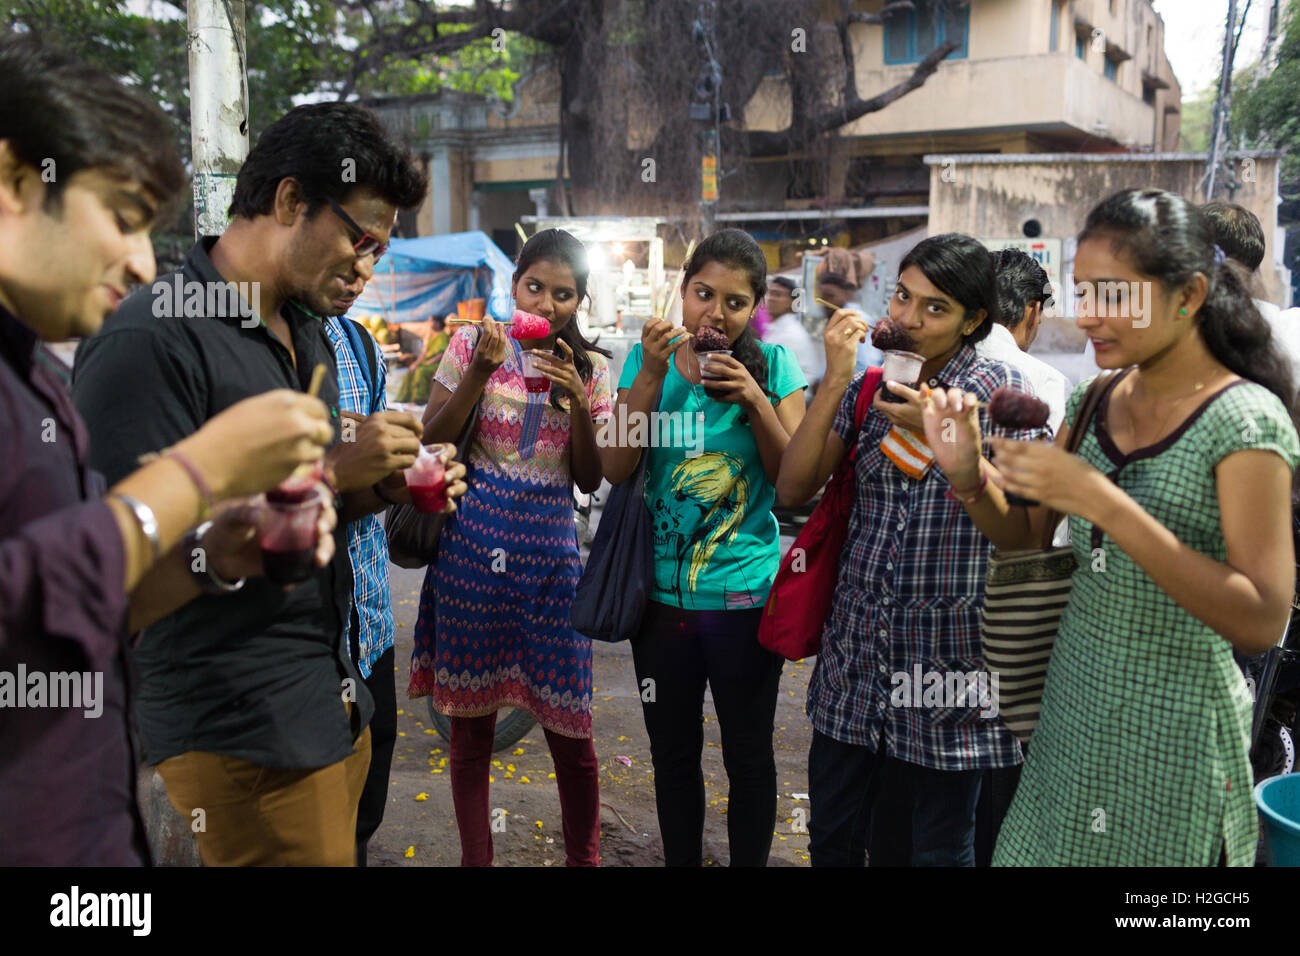 Groupe de jeunes Indiens de manger de la glace rasée aussi connu comme la glace Gola à Hyderabad, Inde Banque D'Images